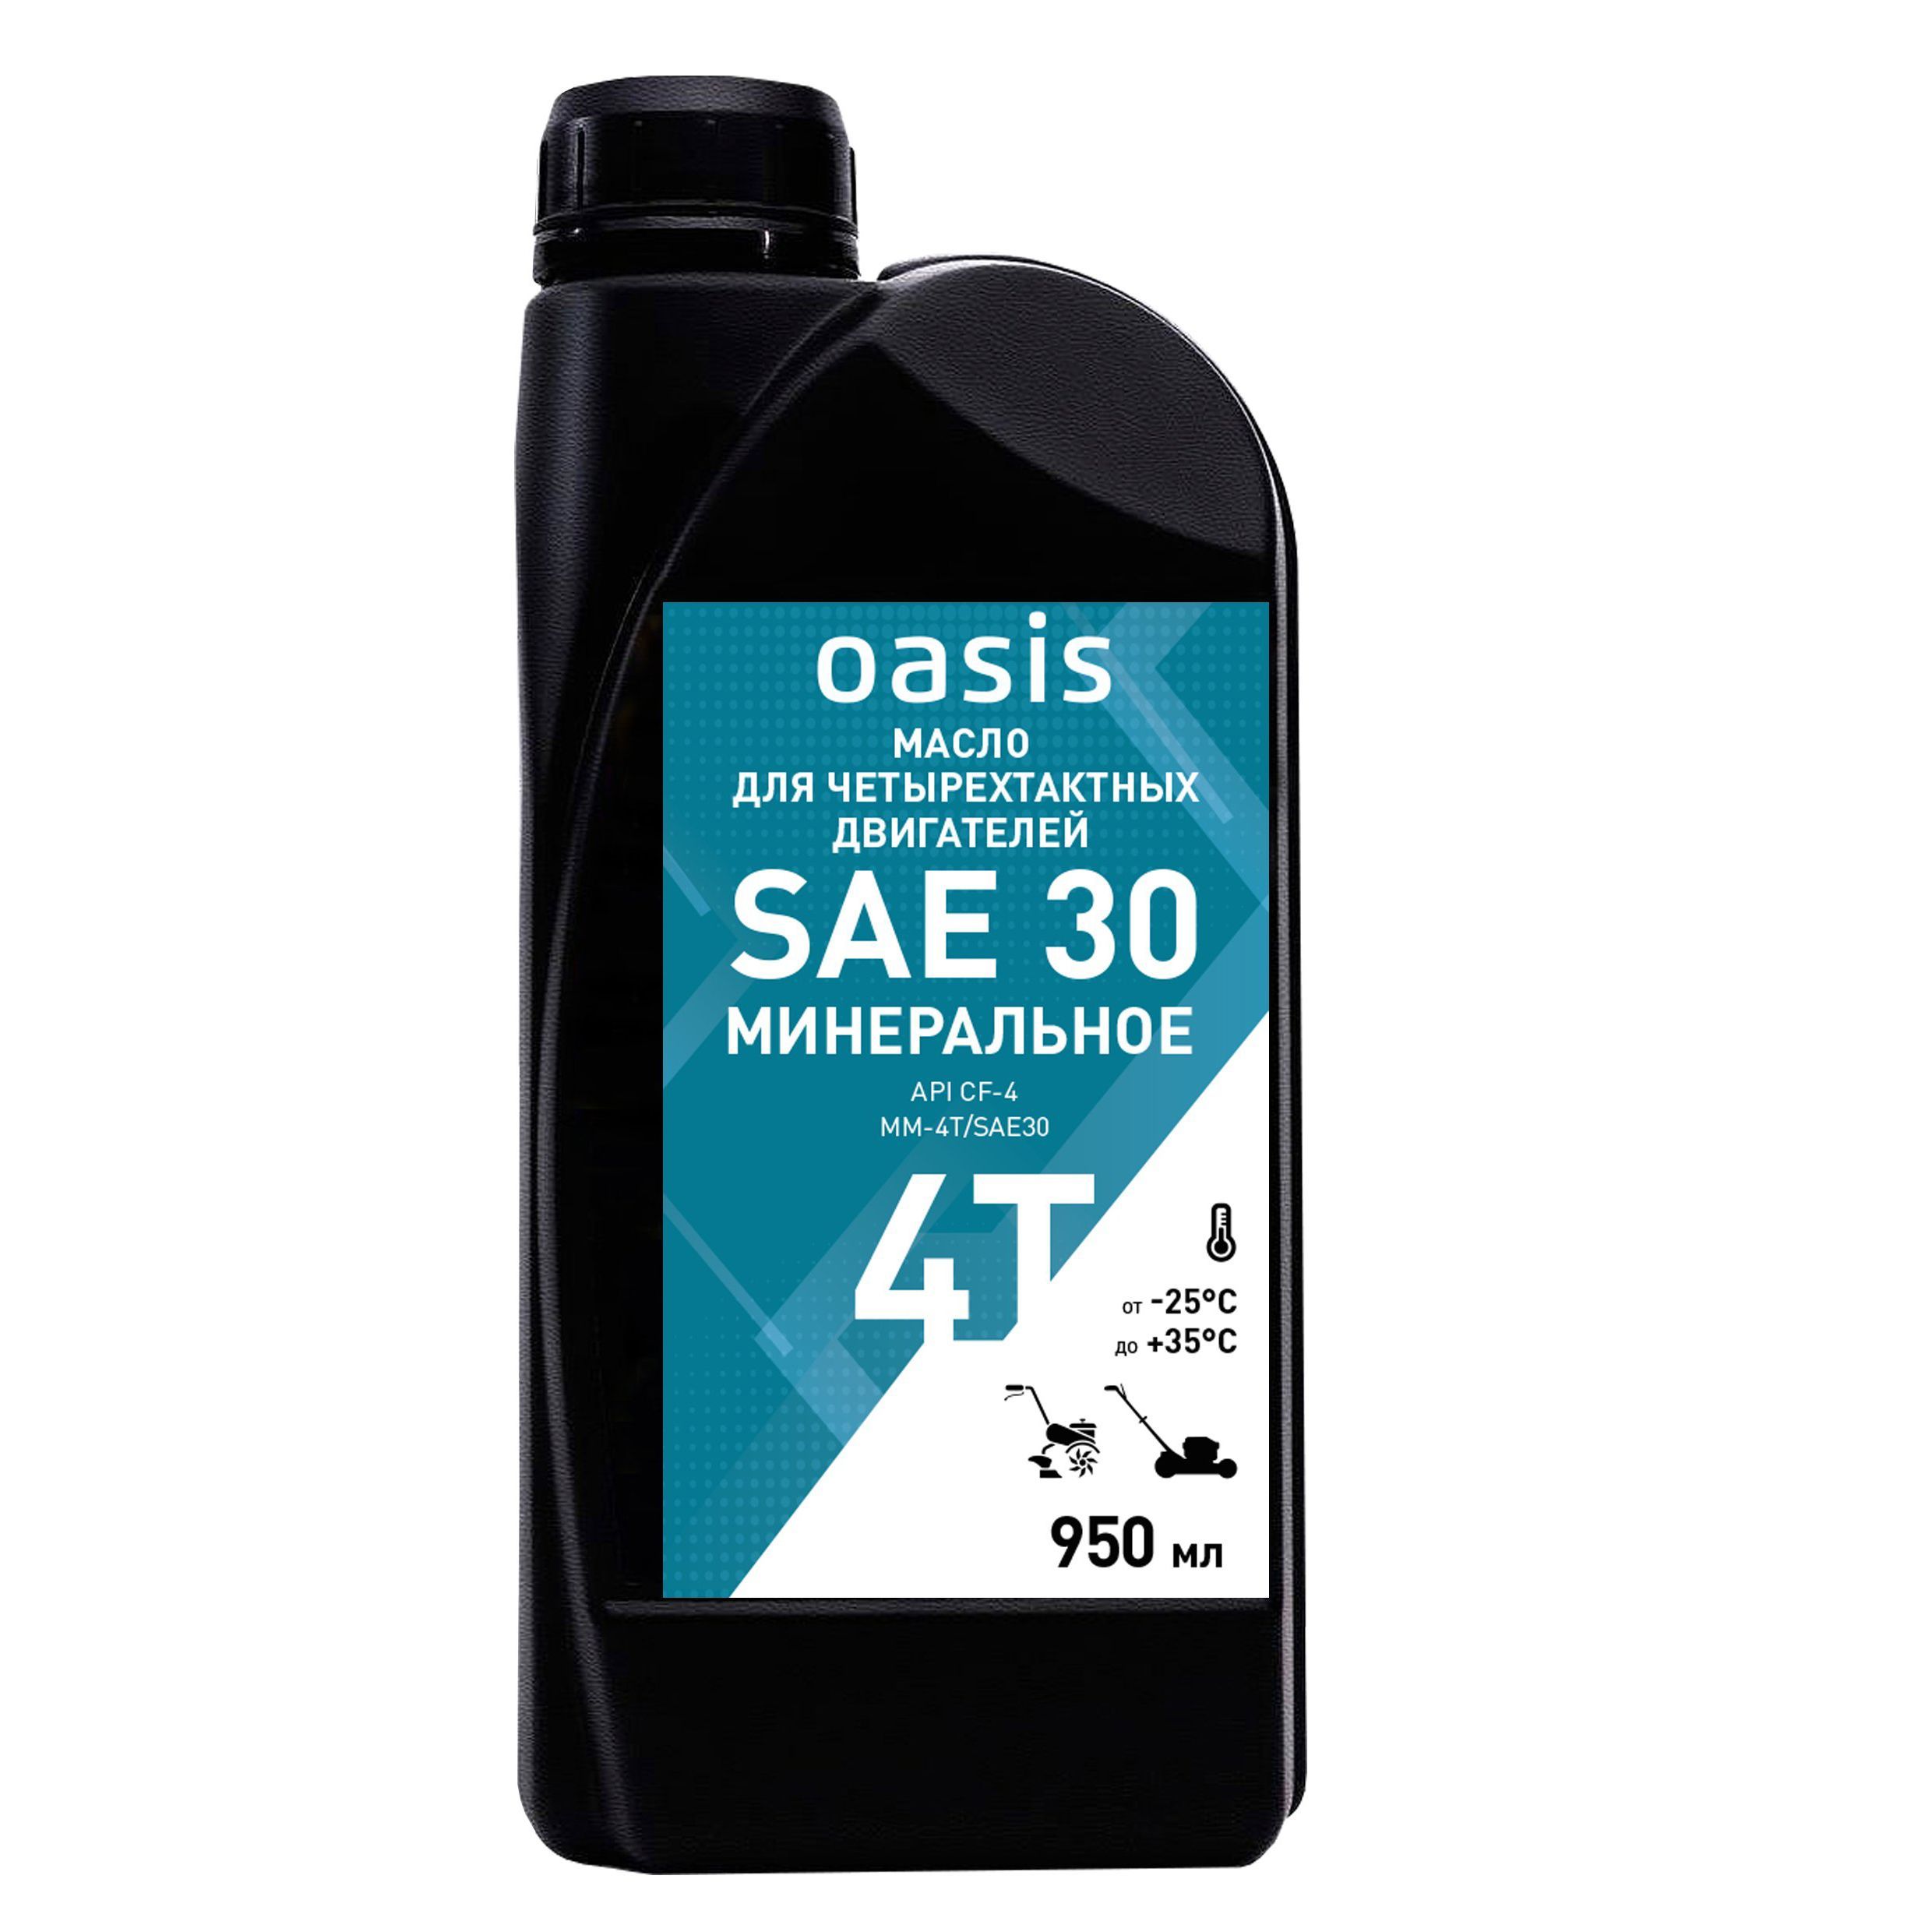 Масло для 4-х тактных двигателей Oasis MM-4T/SAE30 (950 мл)OASIS 4640130950507